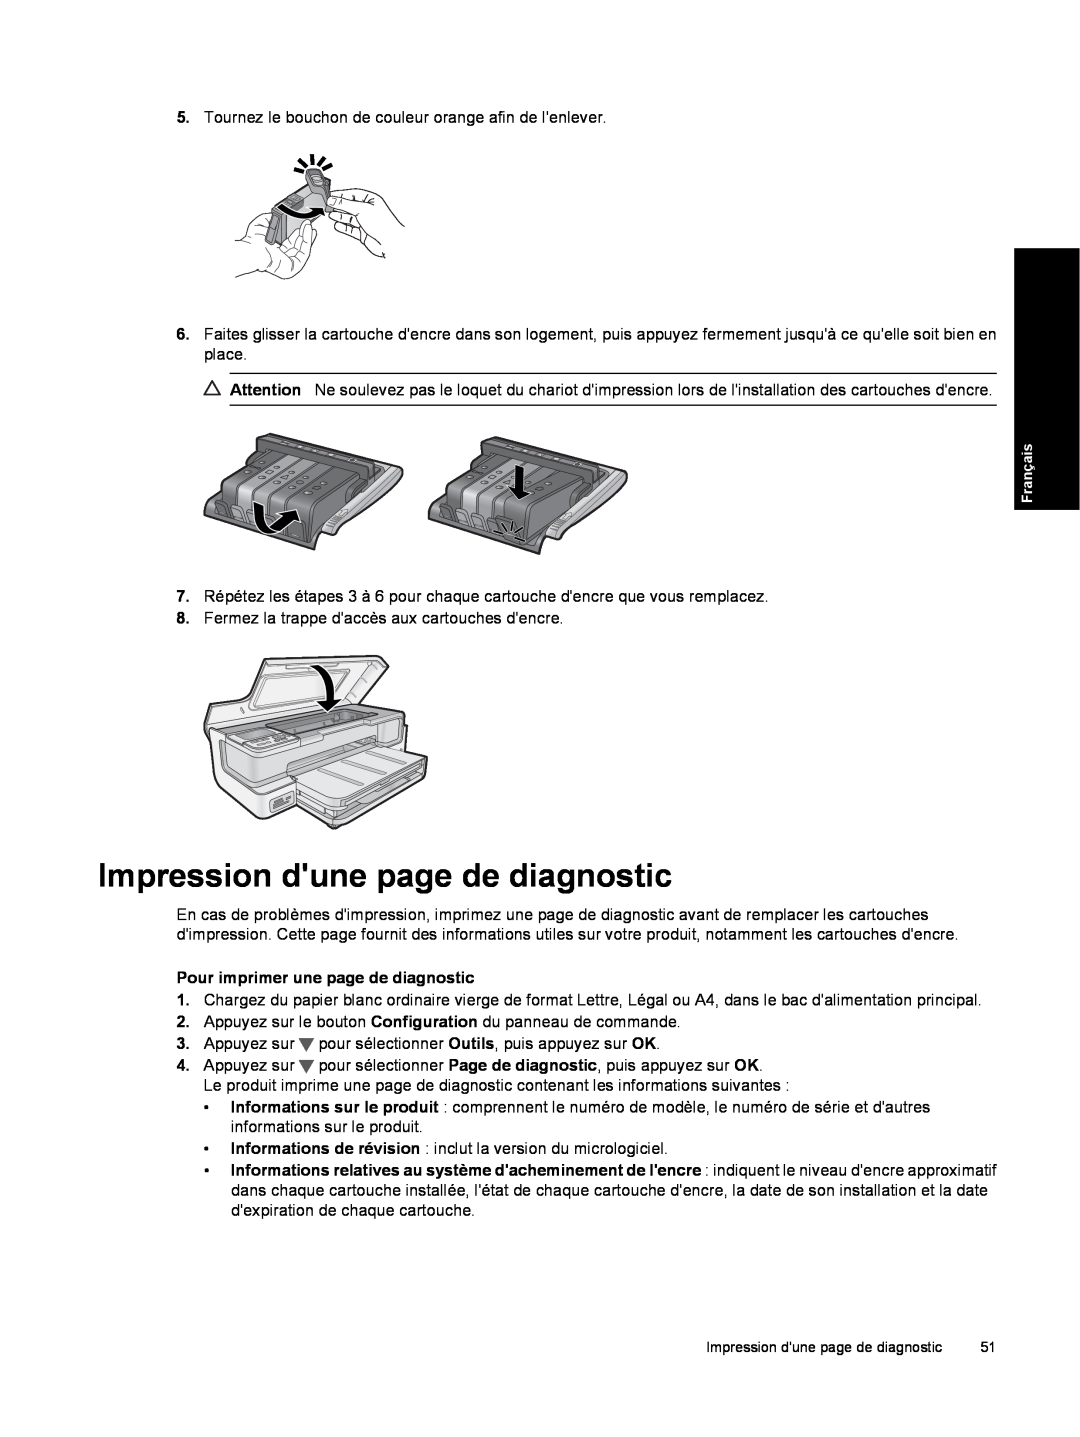 HP B8550 Photo CB981A#B1H manual Impression dune page de diagnostic, Pour imprimer une page de diagnostic 